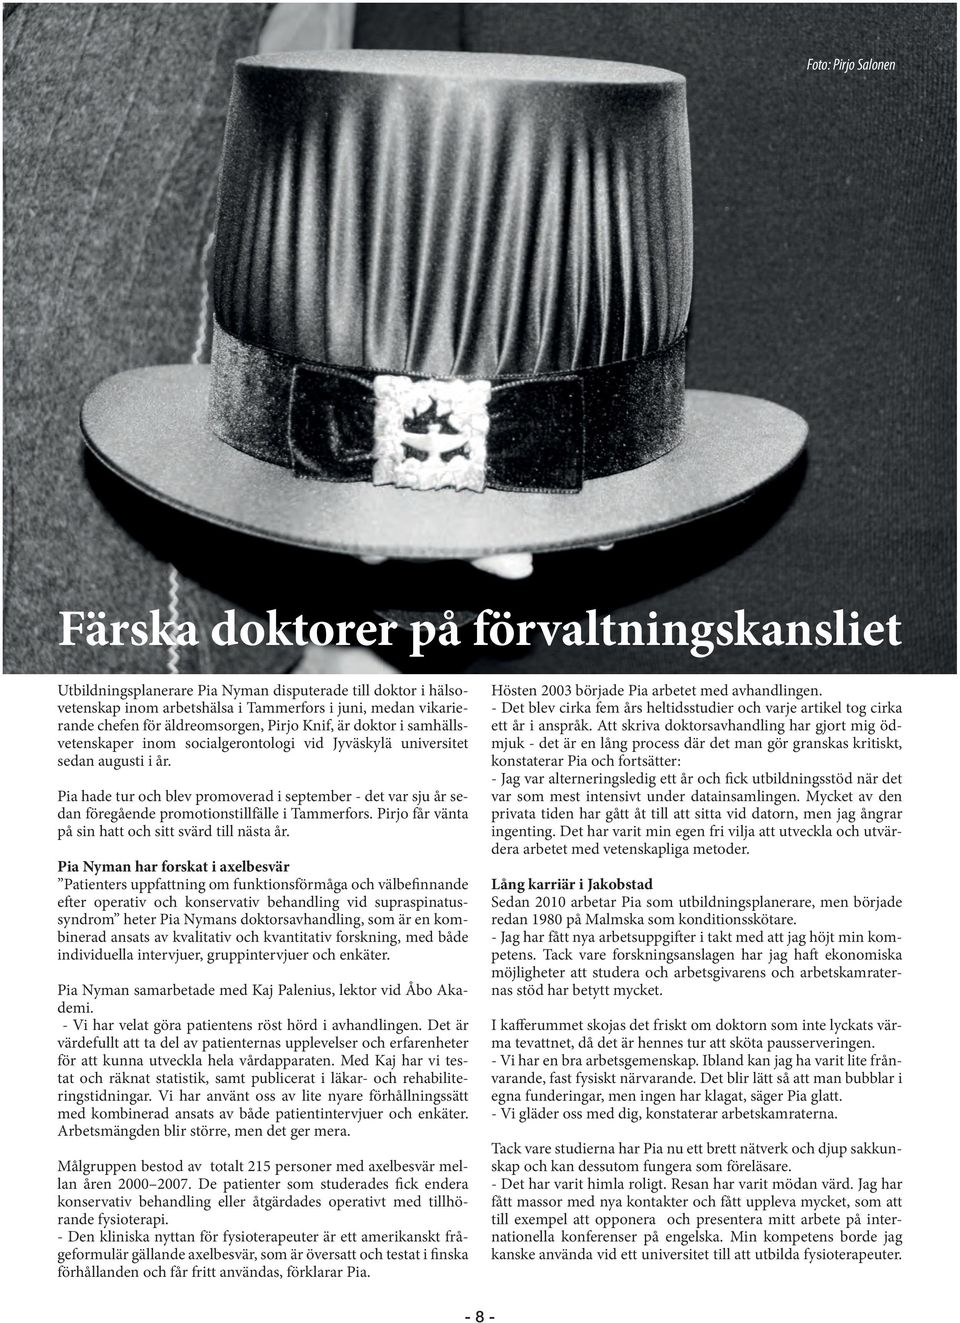 Pia hade tur och blev promoverad i september - det var sju år sedan föregående promotionstillfälle i Tammerfors. Pirjo får vänta på sin hatt och sitt svärd till nästa år.